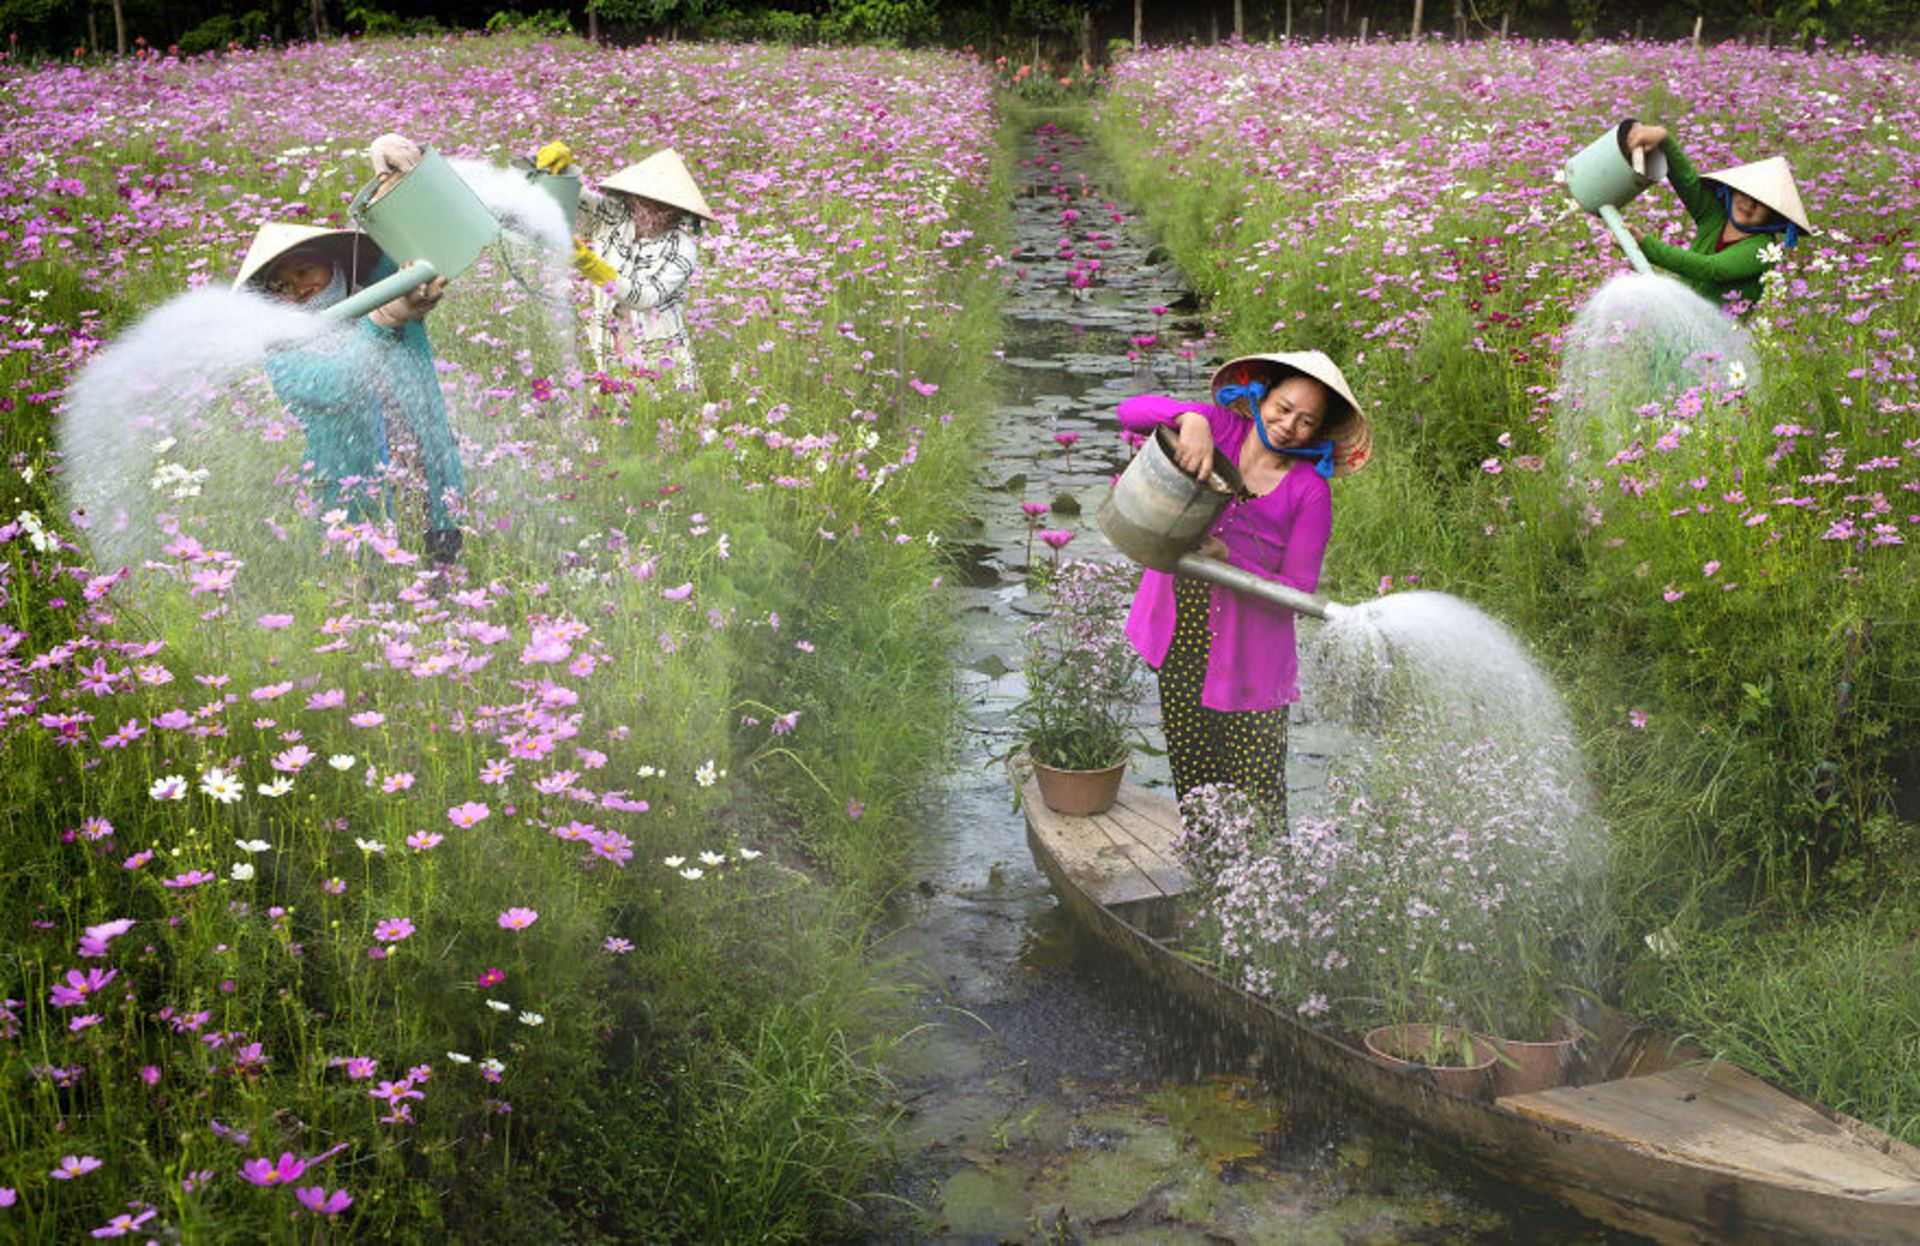 آب دادن به گل ها کارگران ویتنامی در مزرعه گل